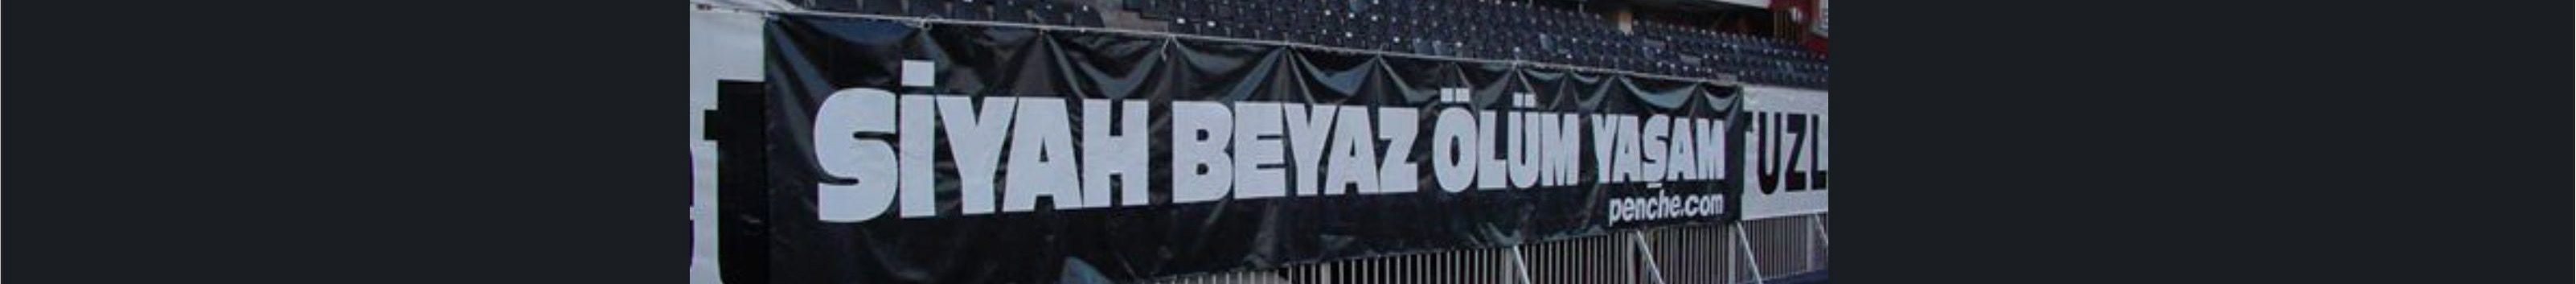 Emirhan Karakaş's profile banner